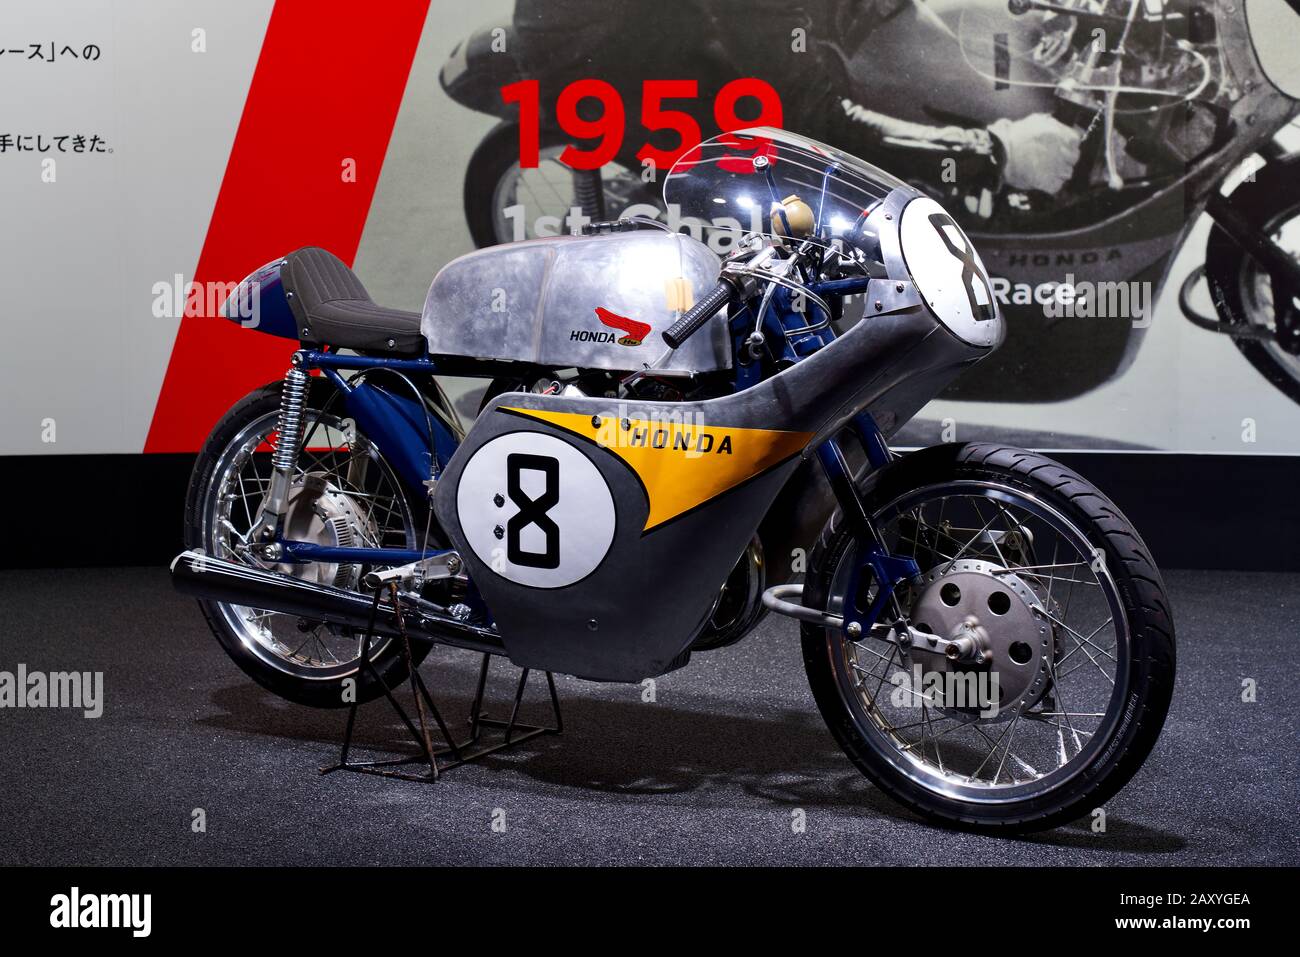 Honda classic motorcycles, 1959 Honda Motorcycles, at Tokyo Motor Show 2019 Stock Photo